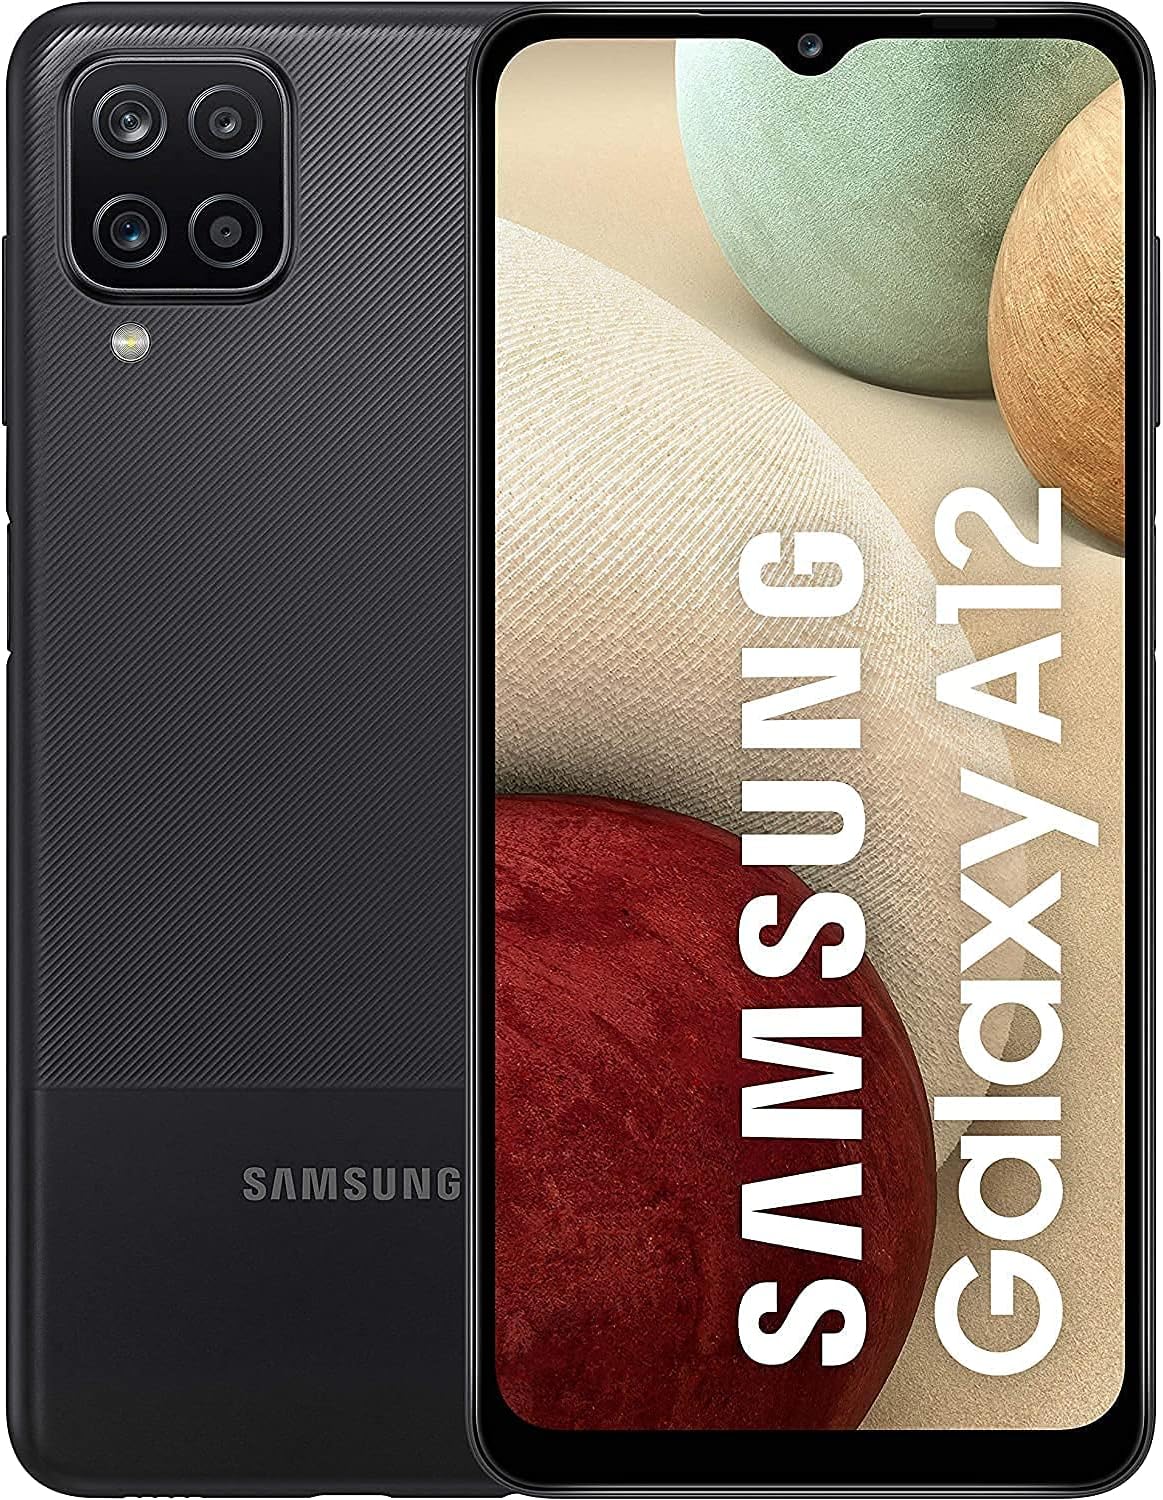 Samsung A12 Screen Repair